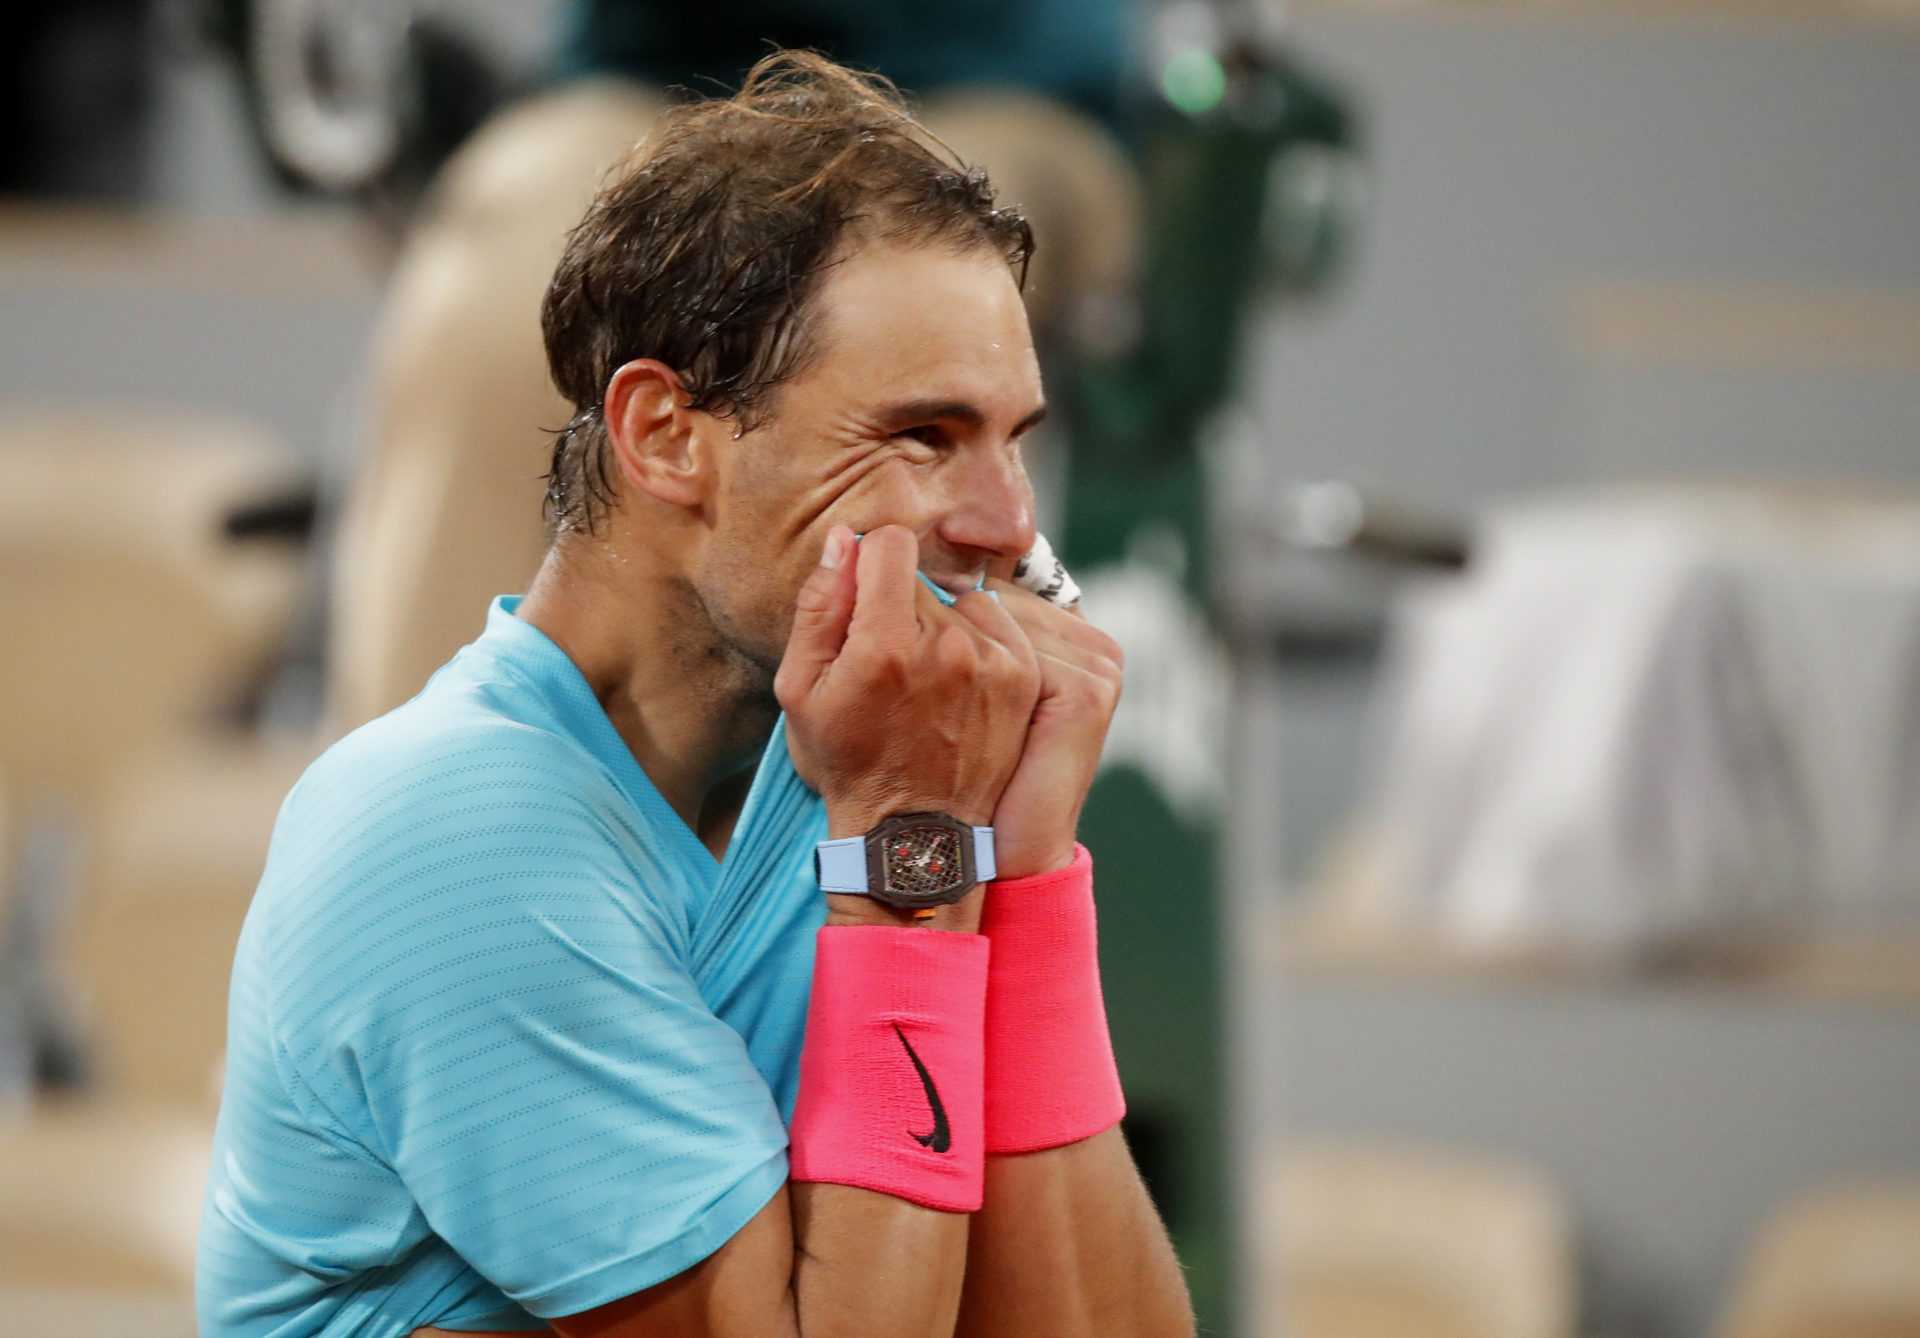 "Il ne pense pas qu'il est Rafael Nadal" - L'entraîneur parle de la modestie de Nadal